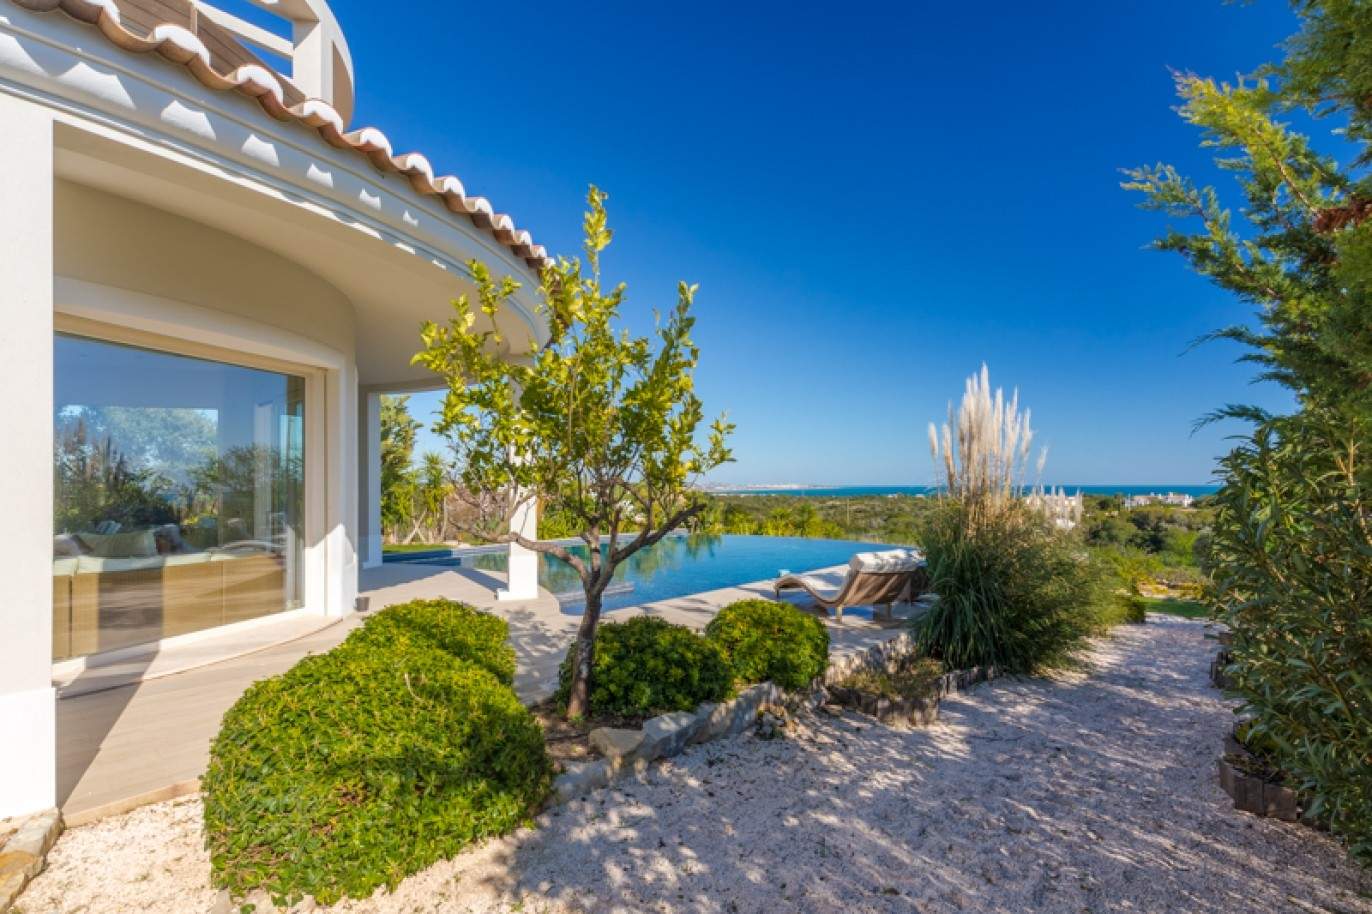 Freistehende villa zum Verkauf mit Meerblick, in der Nähe von Strand und golf, Carvoeiro, Algarve, Portugal_76404